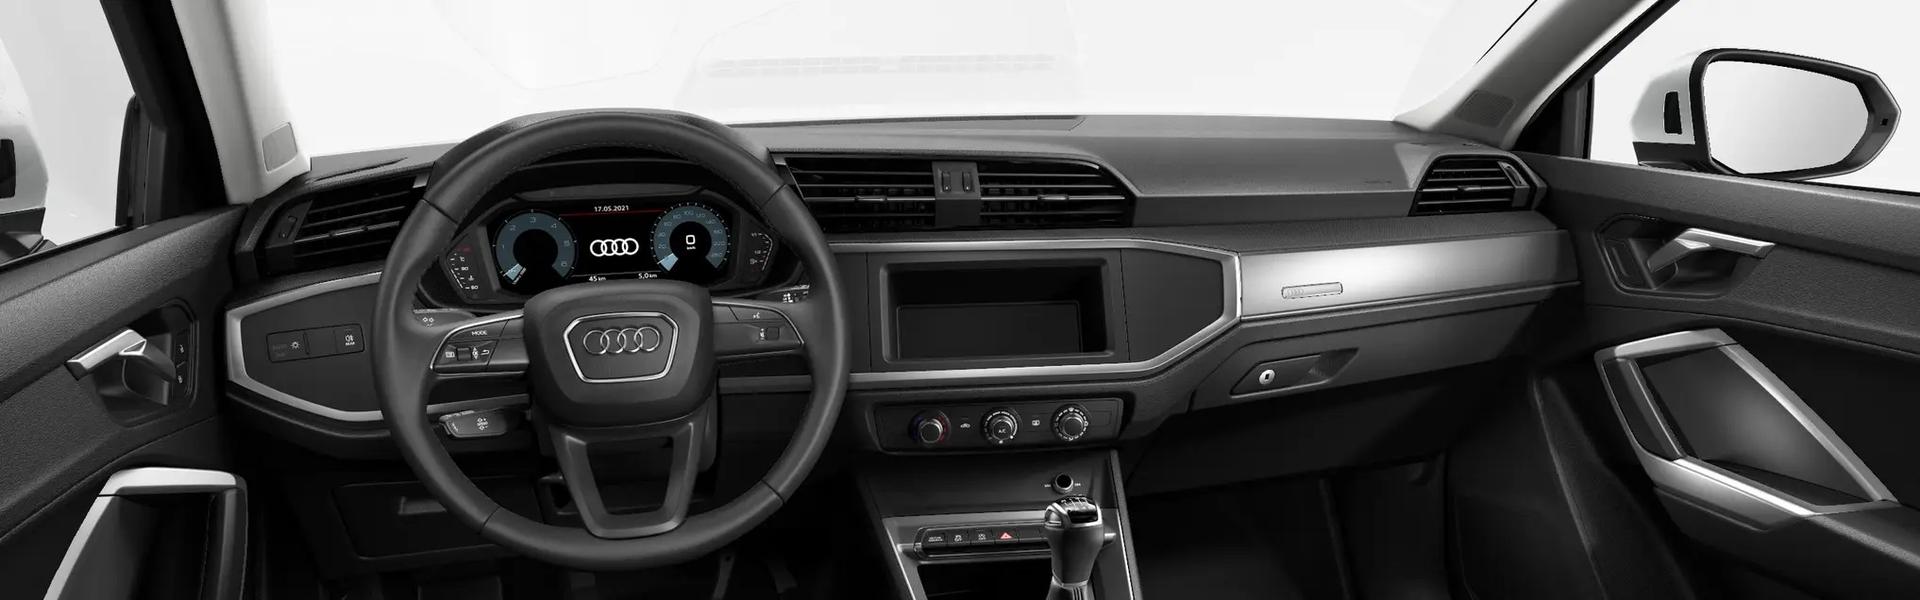 Einstiegsleisten Türschutz für Audi Q2 Q3 Auto Edelstahl Chrom Exclusi